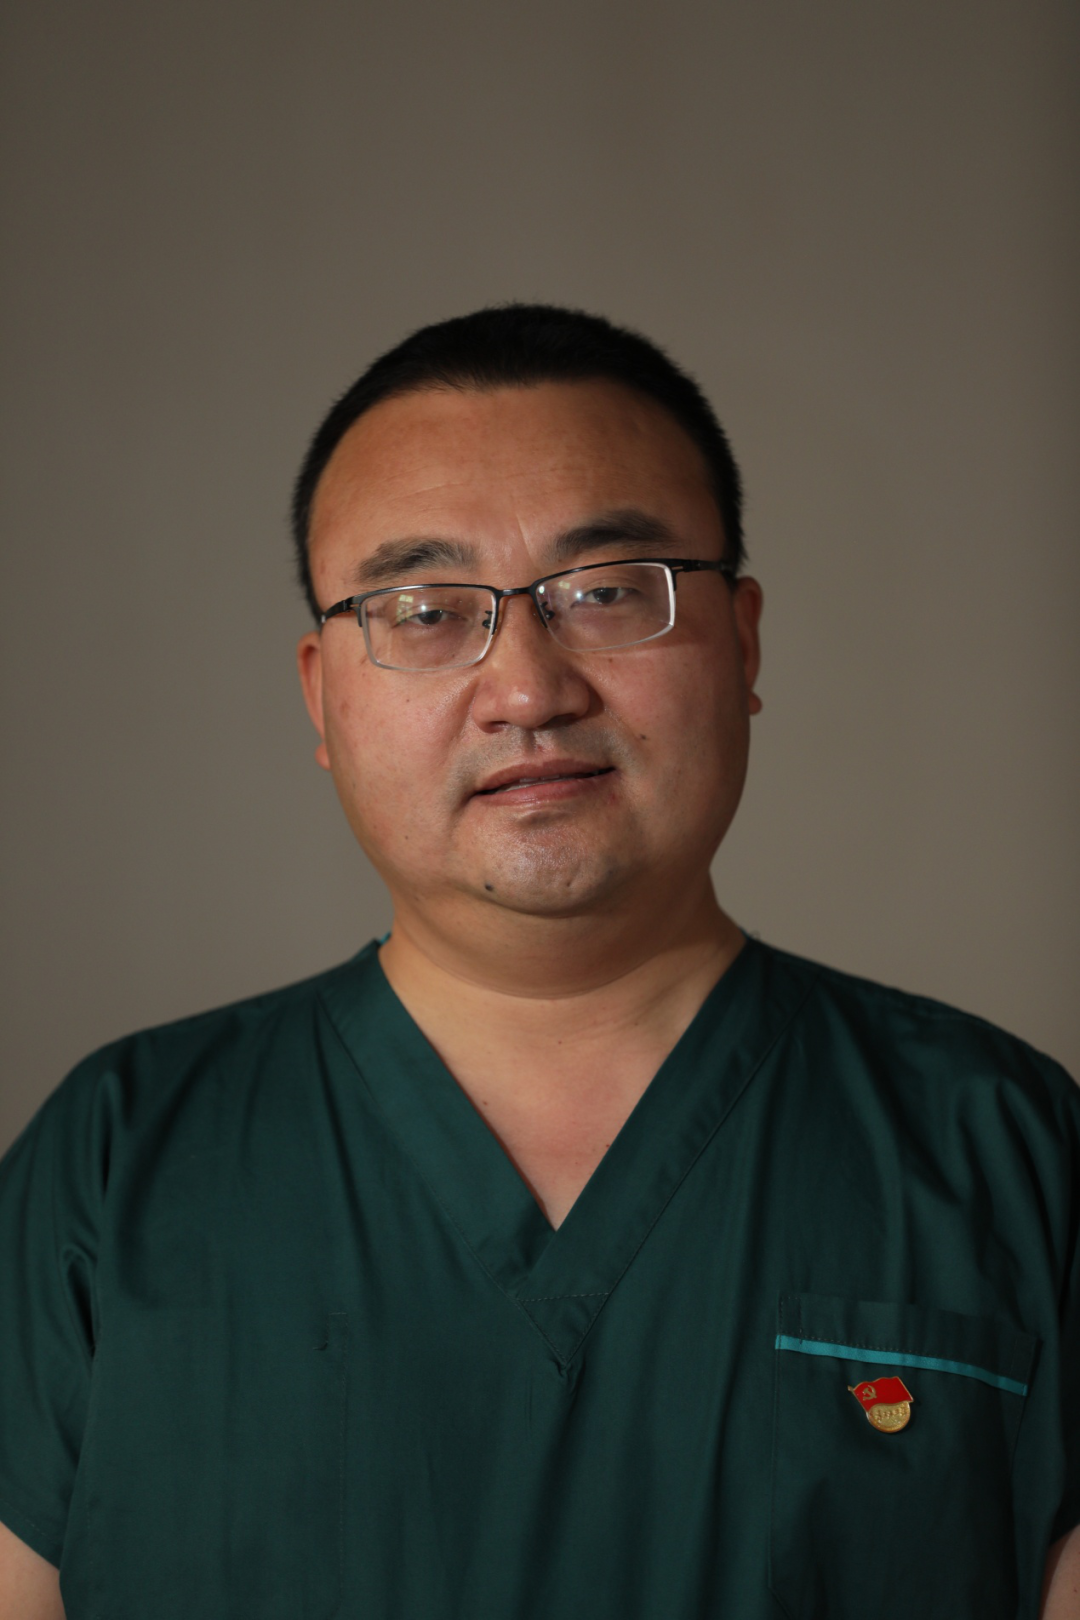 王龙龙,是榆林高新医院副院长,内科主治医师,2月19日,随陕西省第四批